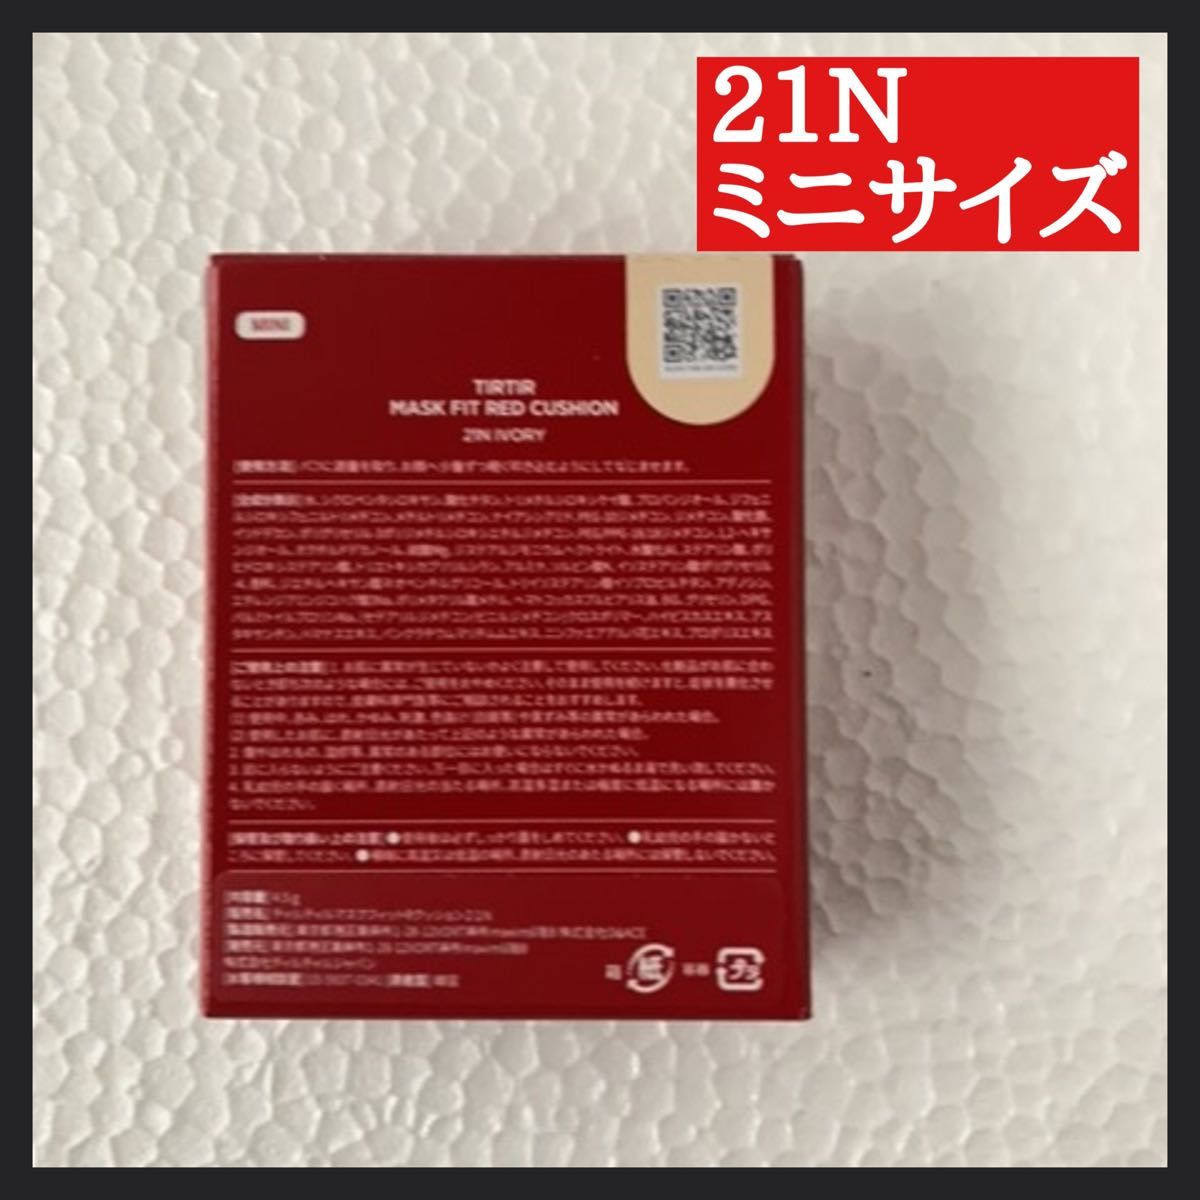 【新品・未開封】tirtir21N MASK FIT RED CUSHION  ミニサイズ クッションファンデ